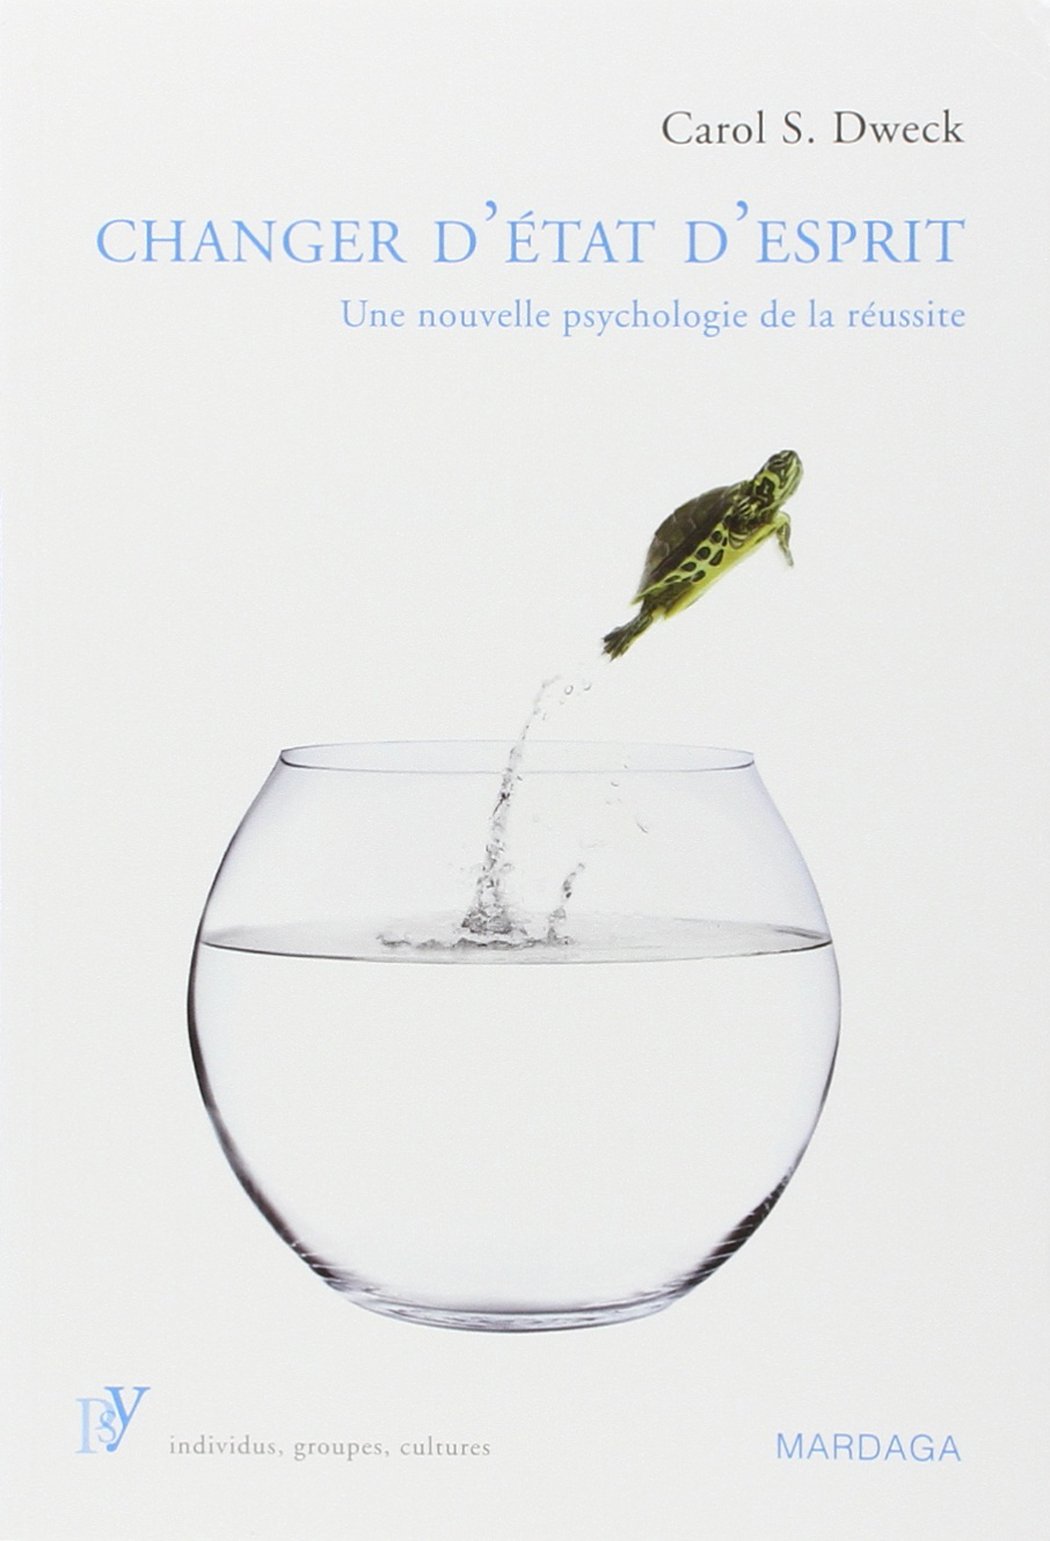 Comment le livre « Changer d’état d’esprit: Une nouvelle psychologie de la réussite » a changé ma vie